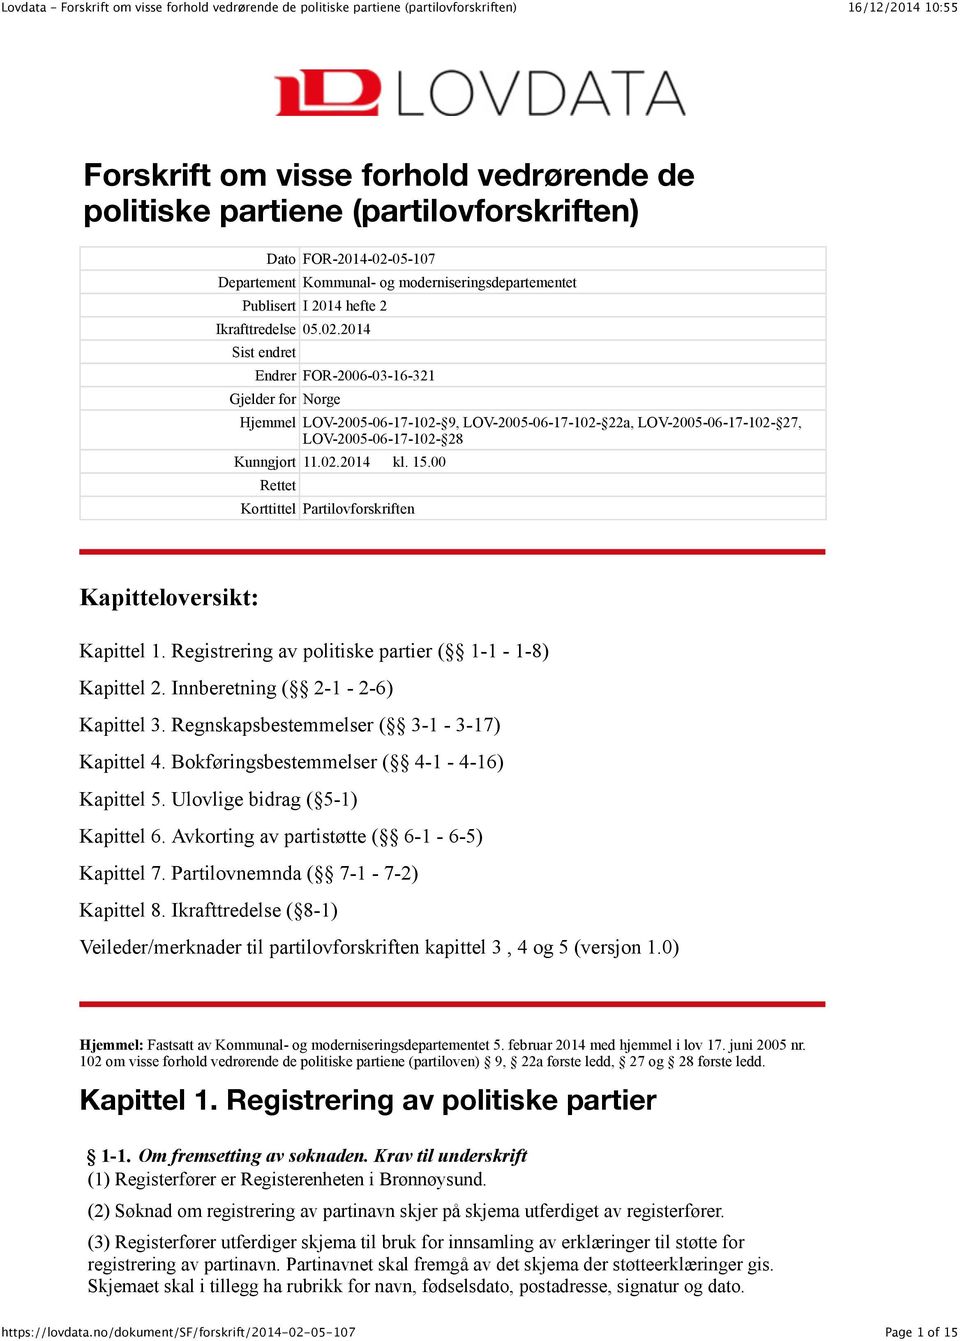 00 Rettet Korttittel Partilovforskriften Kapitteloversikt: Kapittel 1. Registrering av politiske partier ( 1-1 - 1-8) Kapittel 2. Innberetning ( 2-1 - 2-6) Kapittel 3.